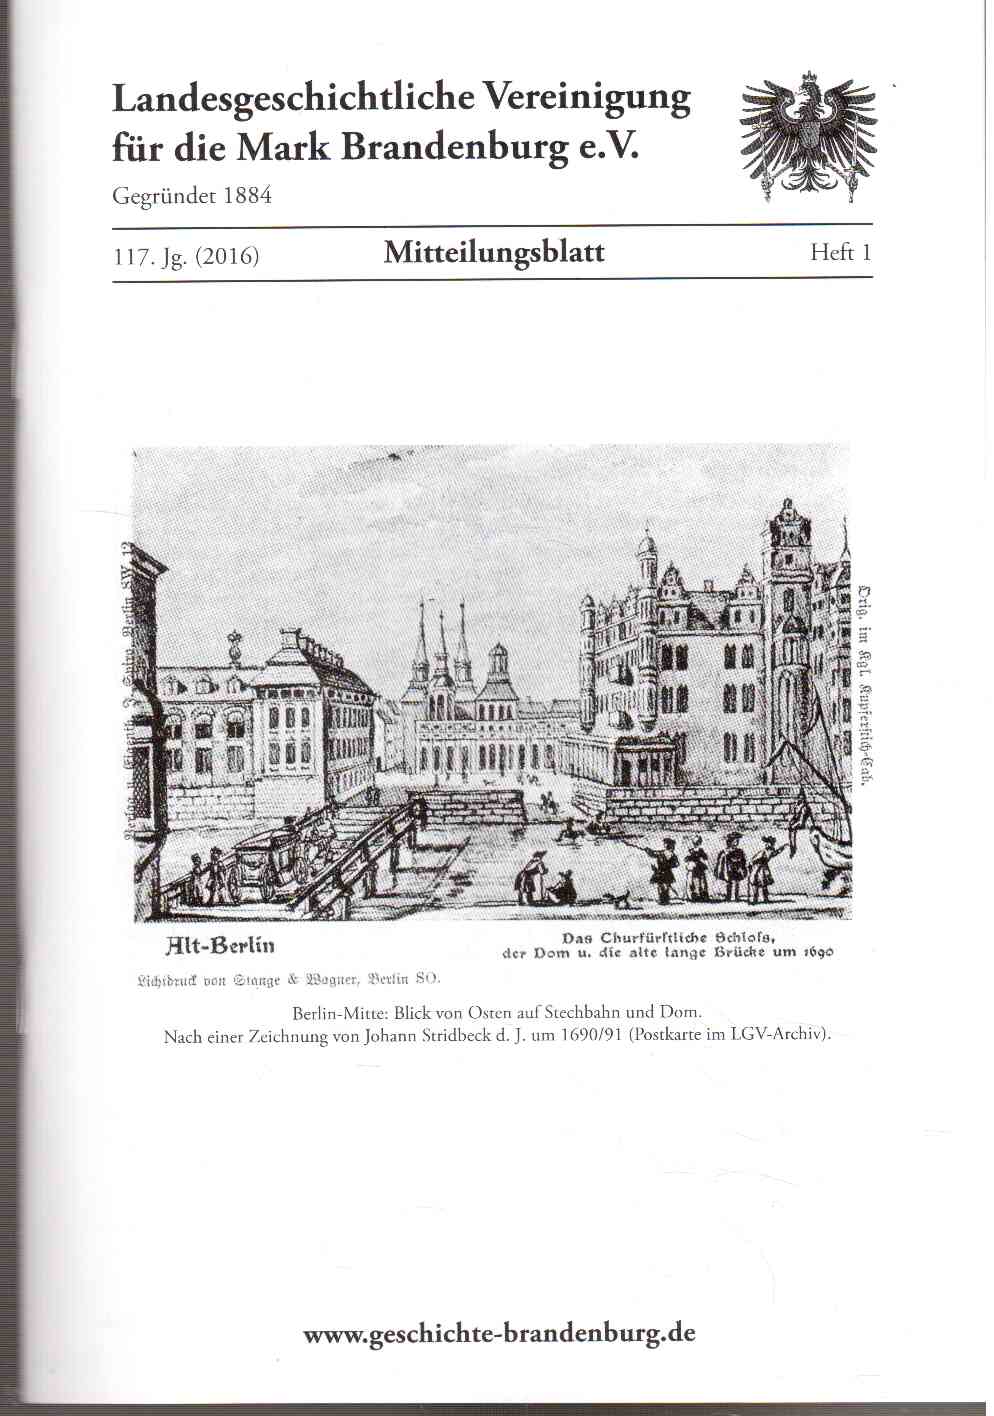 Mitteilungsblatt der Landesgeschichtlichen Vereinigung für die Mark Brandenburg e. V. 117. Jahrgang, Nr. 1(2016)